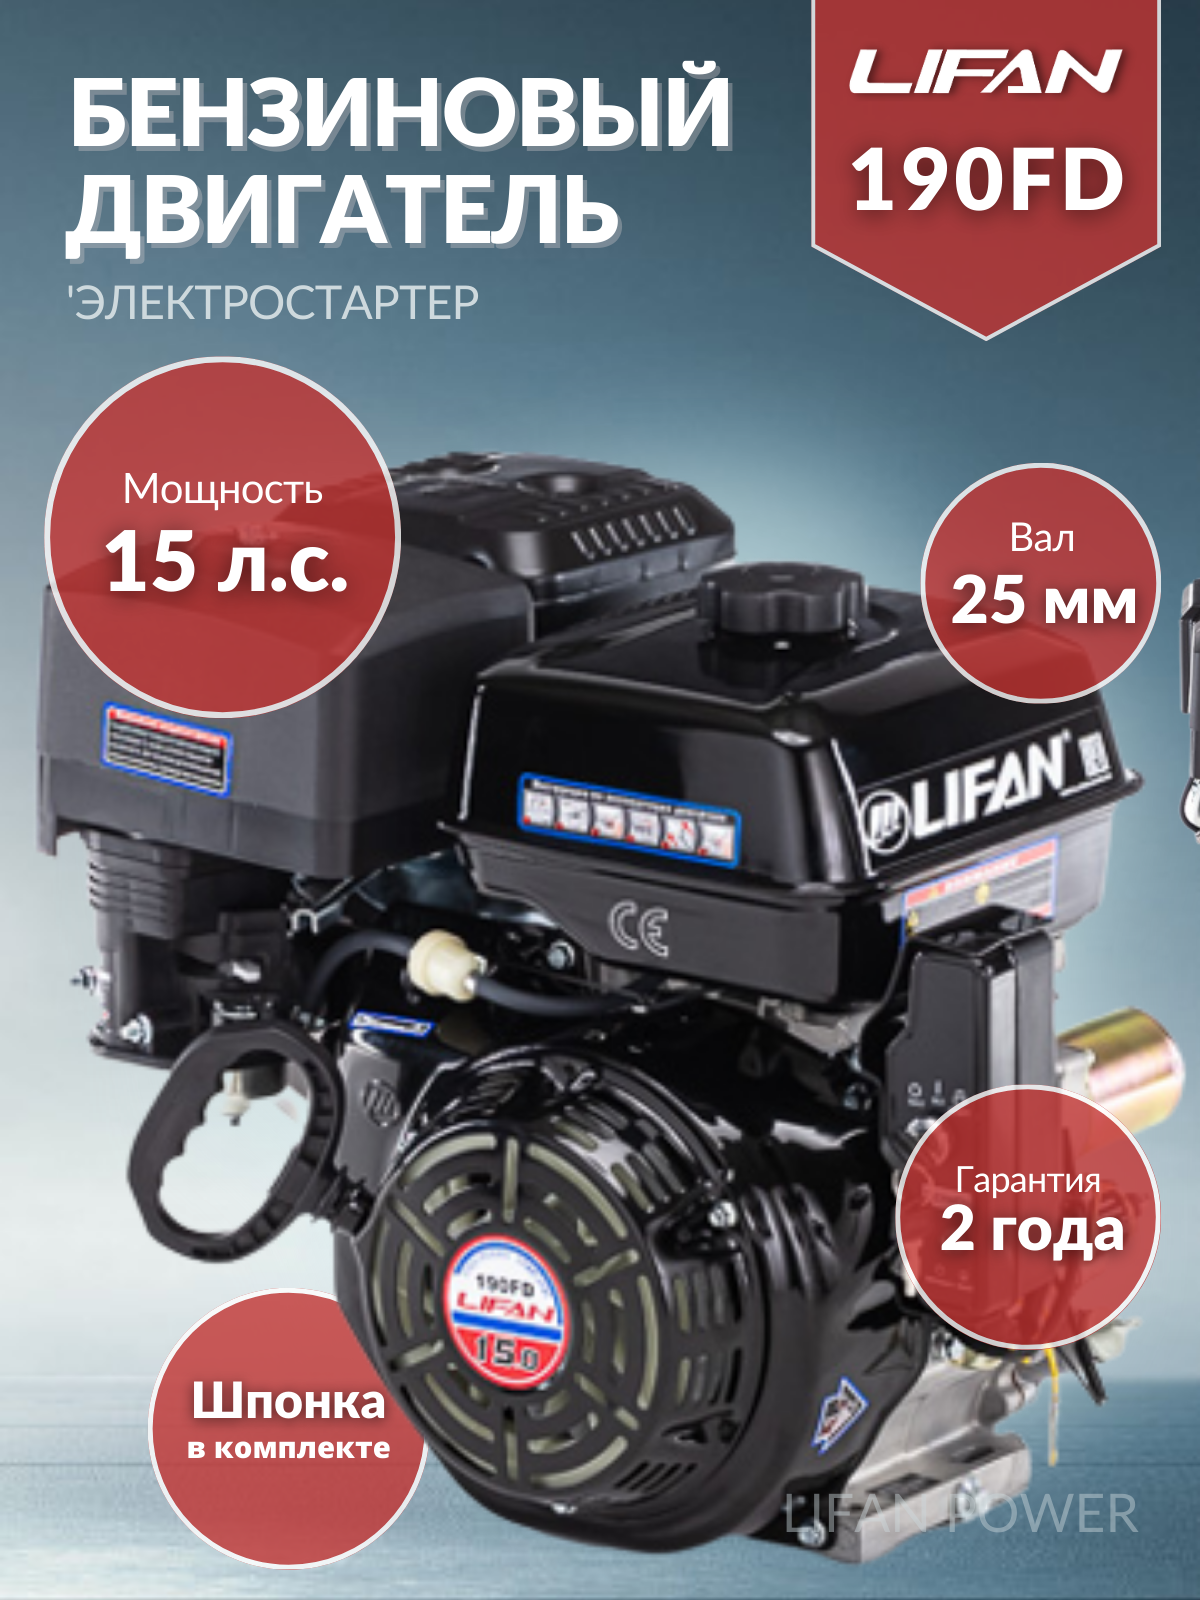 Бензиновый двигатель LIFAN 190FD D25 15 л.с.